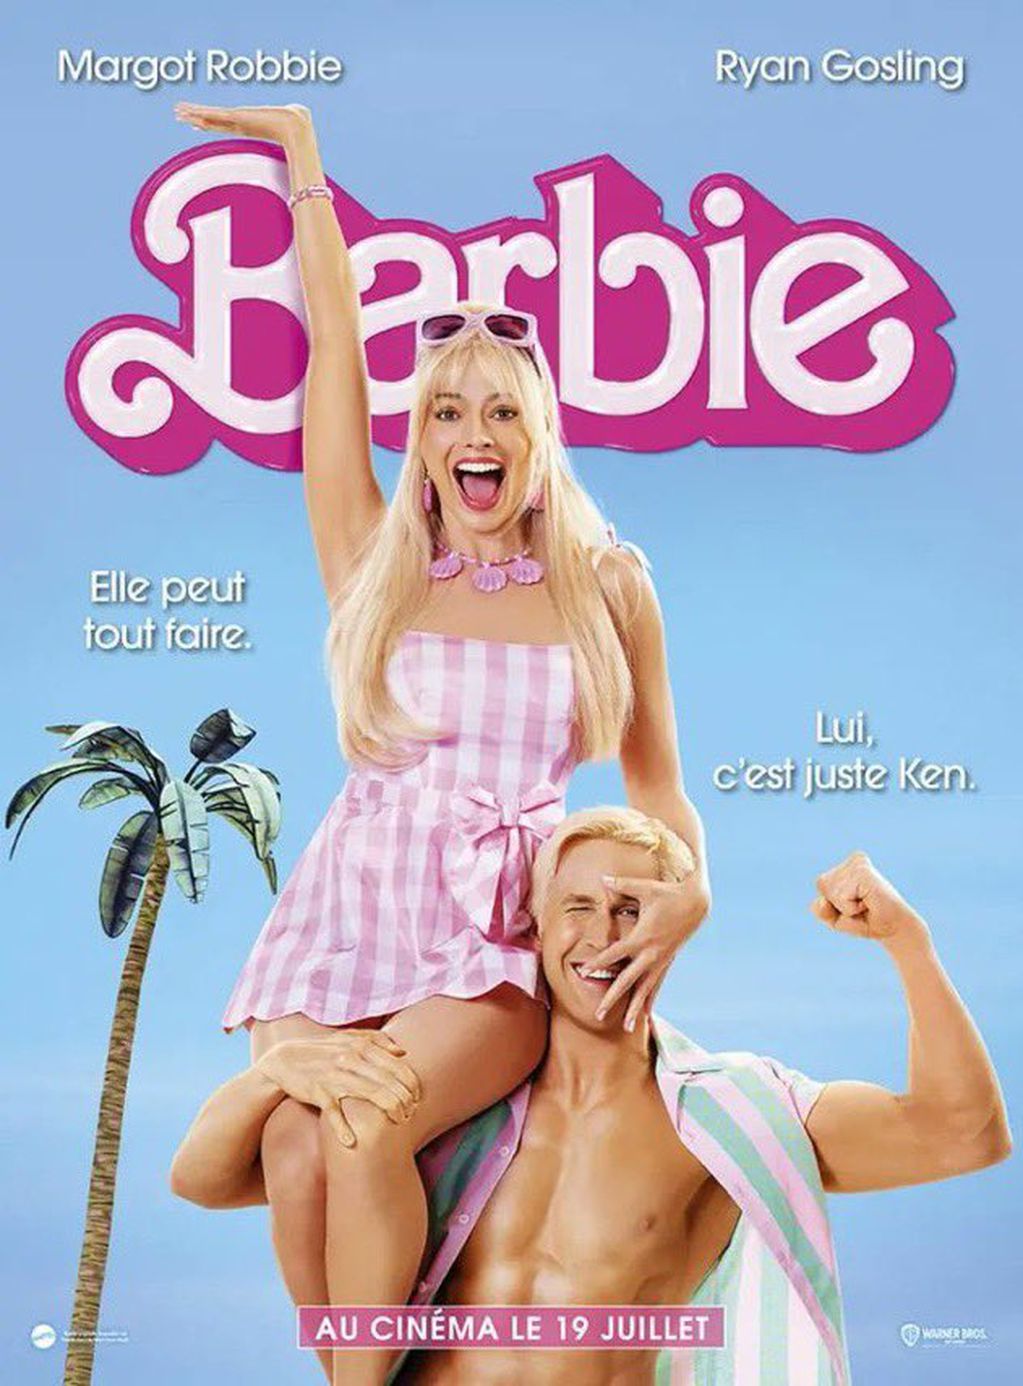 El poster de Barbie que generó revuelo por una frase subida de tono